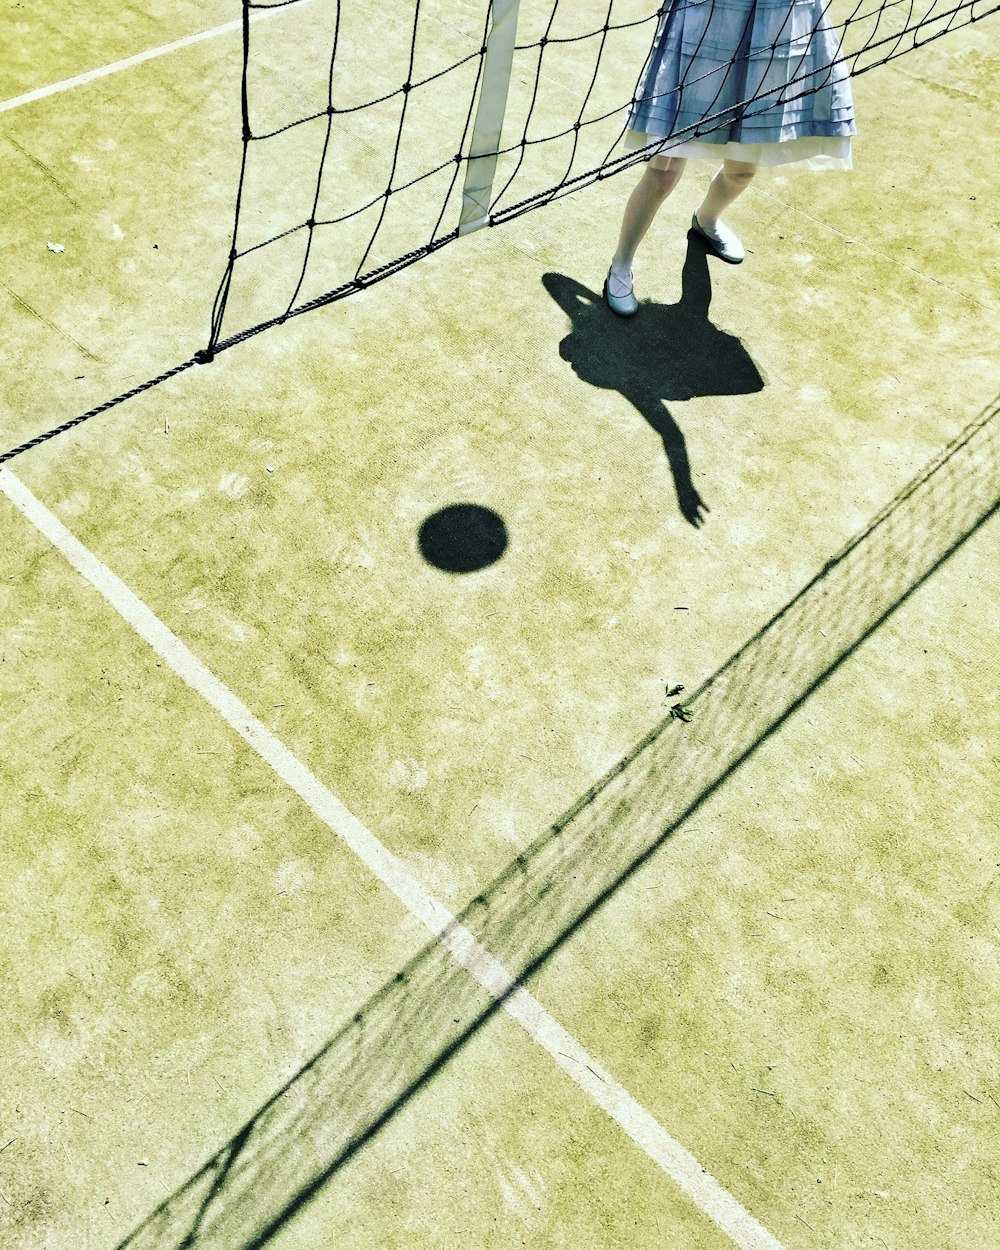 Schattenreflexion eines Mädchens, das Volleyball spielt